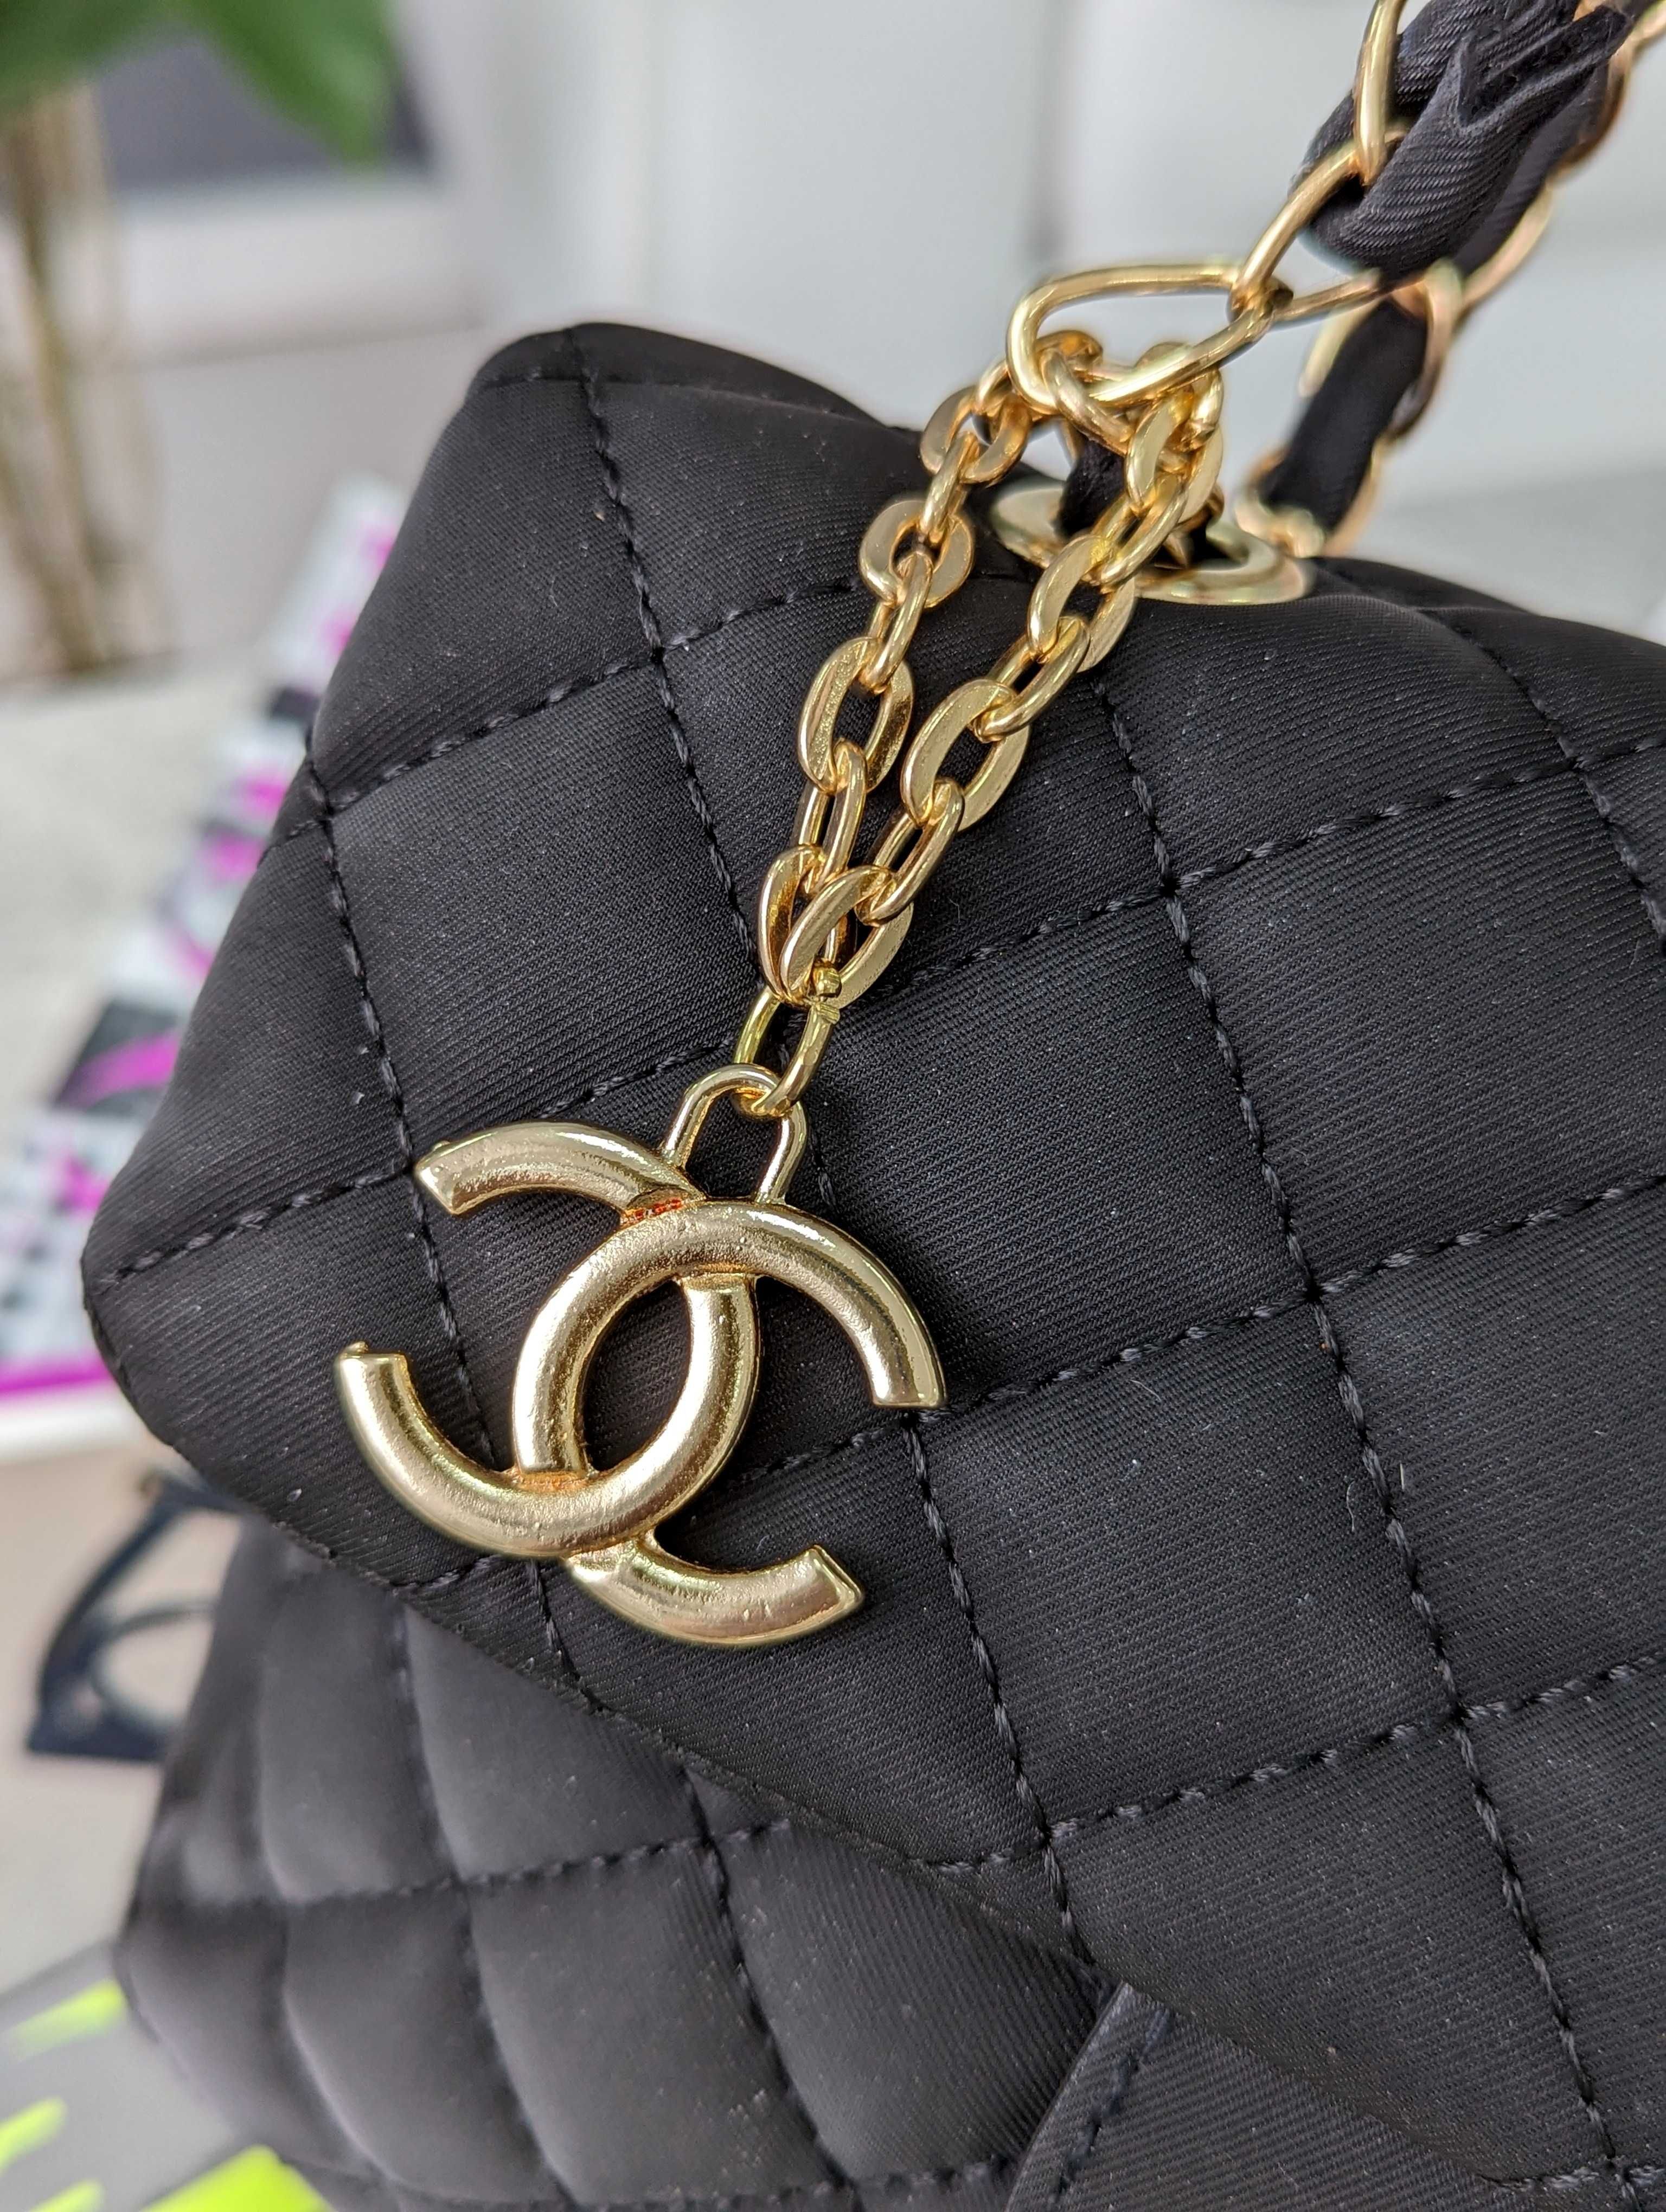 Женская сумка Шанель мягкая нейлон Chanel  черная , молочная